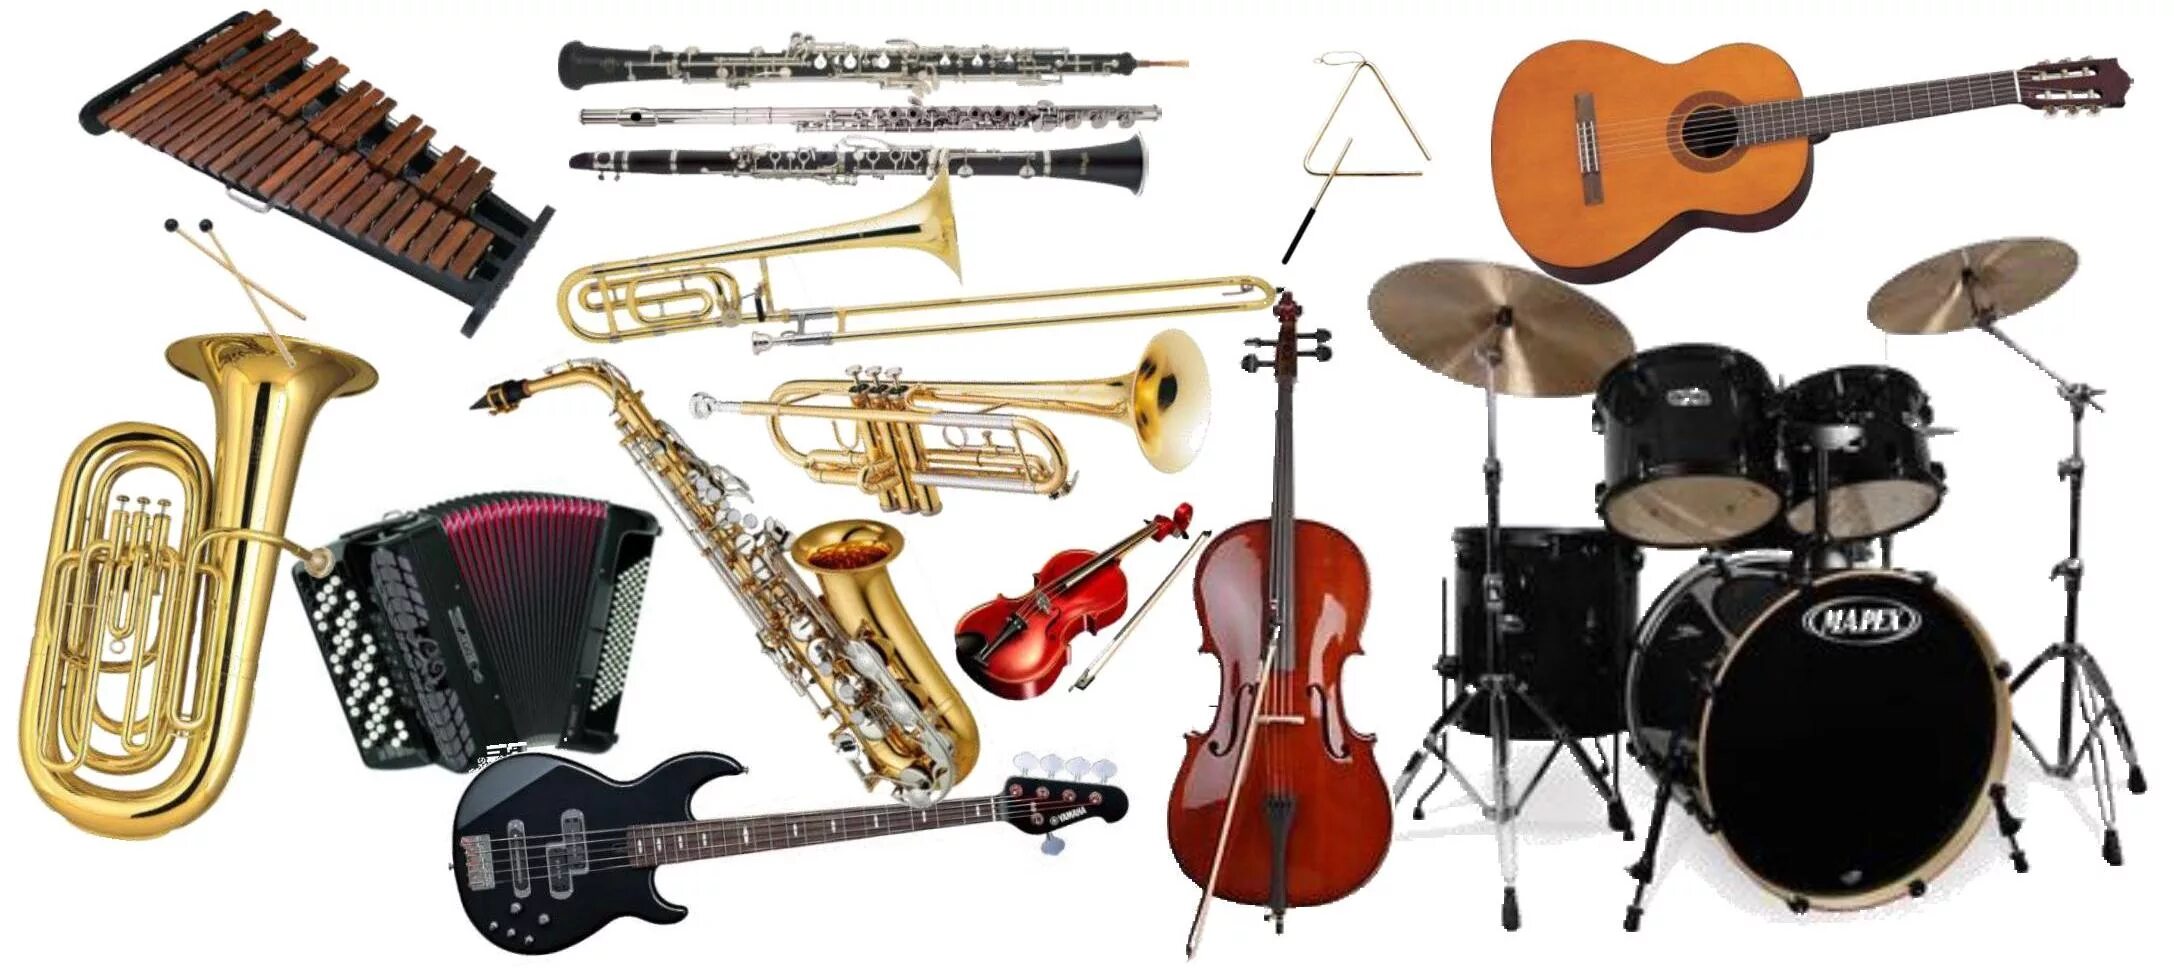 Музыкальные инструменты. Разные музыкальные инструменты. Много музыкальных инструментов. Инструменты эстрадного оркестра.